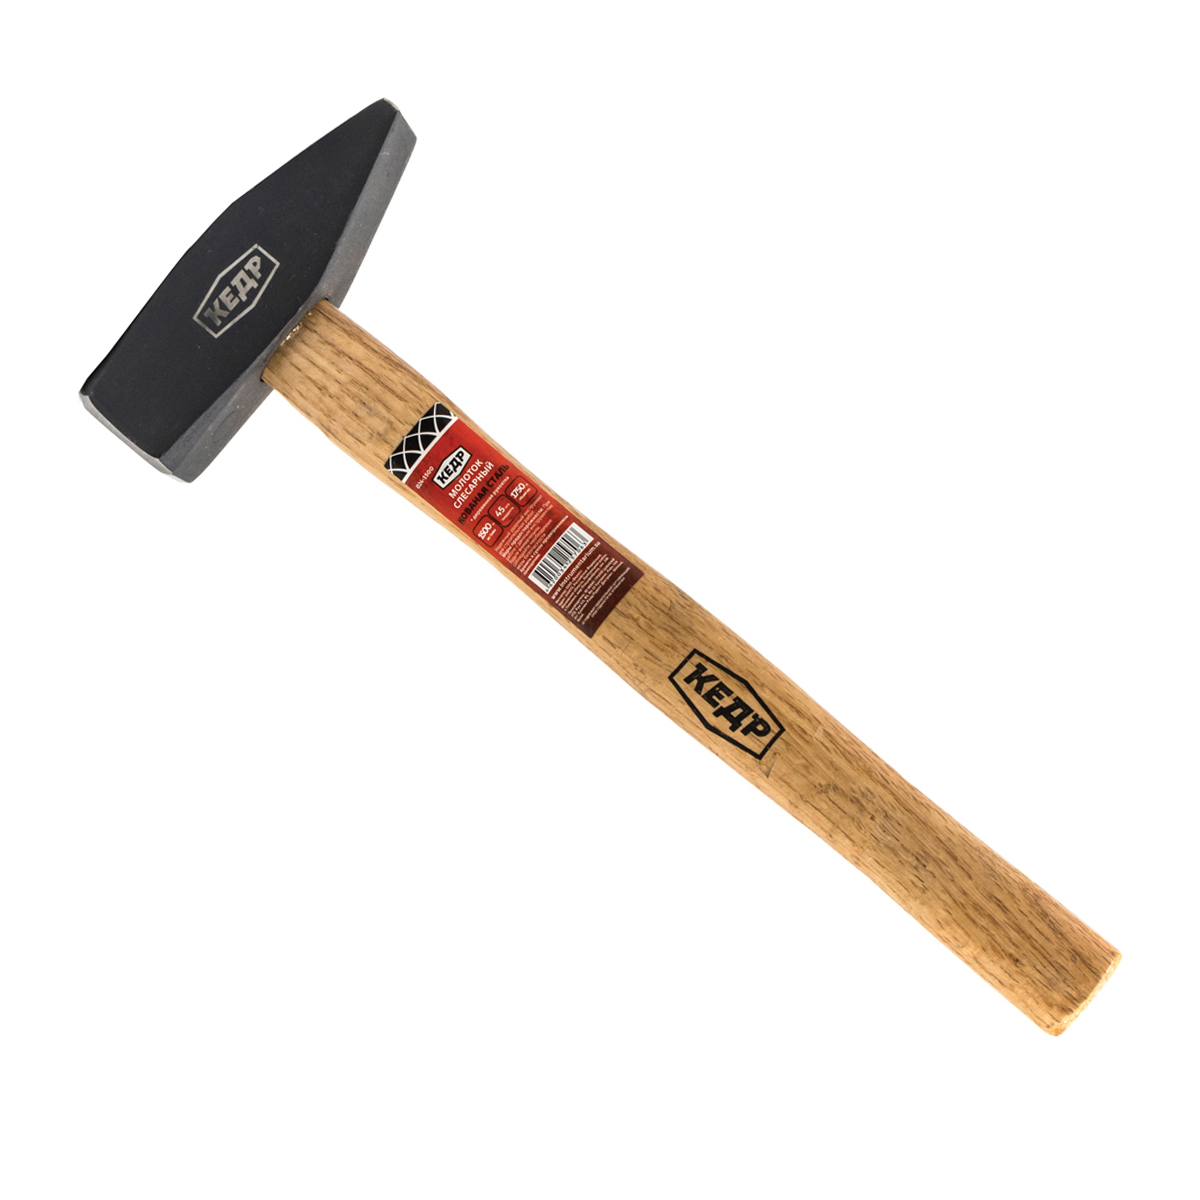 Молоток слесарный Кедр, деревянная ручка, 400 г молоток каменщика кедр деревянная ручка 600 г